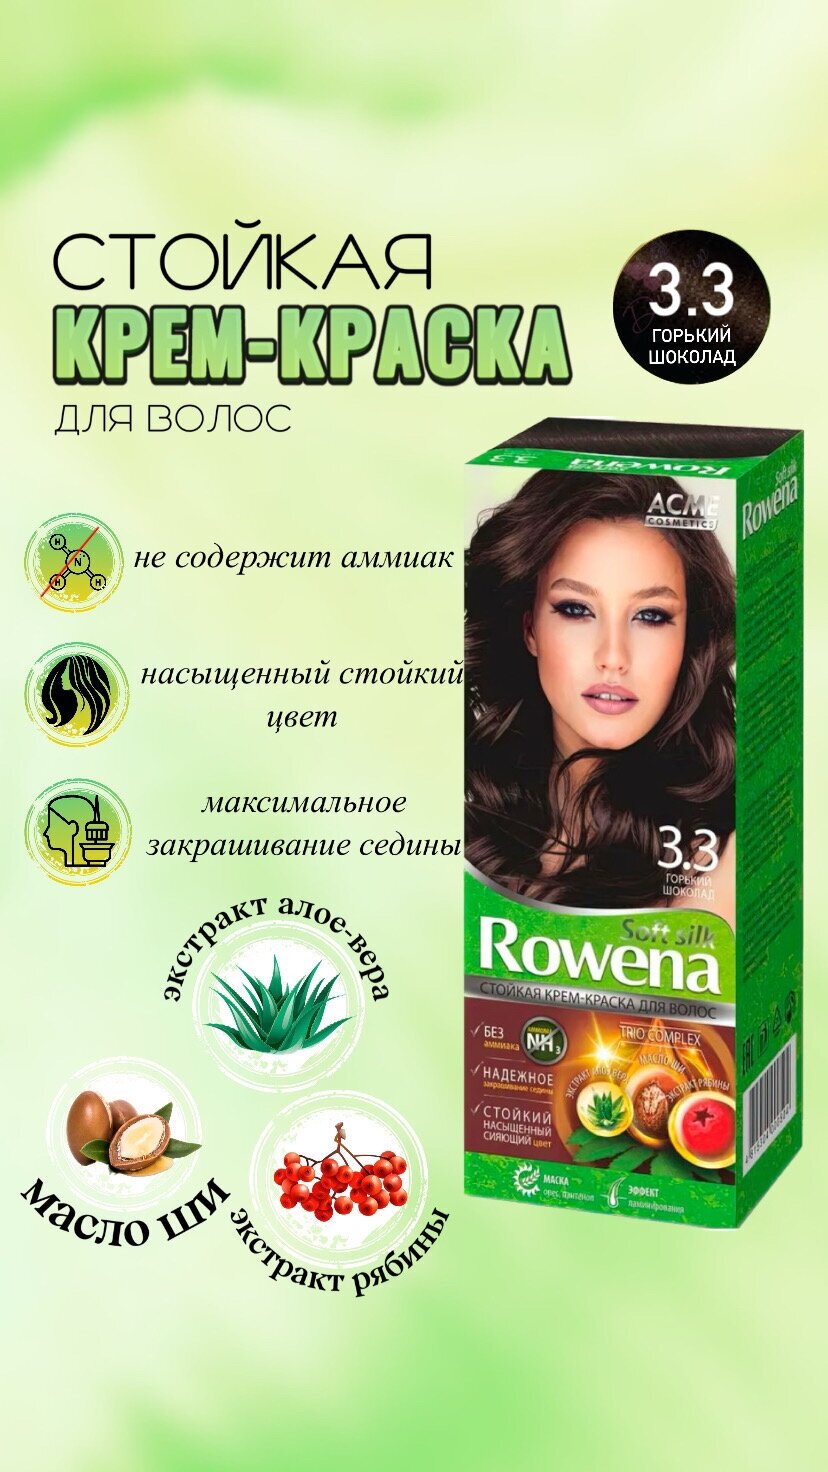 Крем-краска для волос Rowena soft silk, тон 3.3 горький шоколад ( 1 шт) — купить в интернет-магазине по низкой цене на Яндекс Маркете